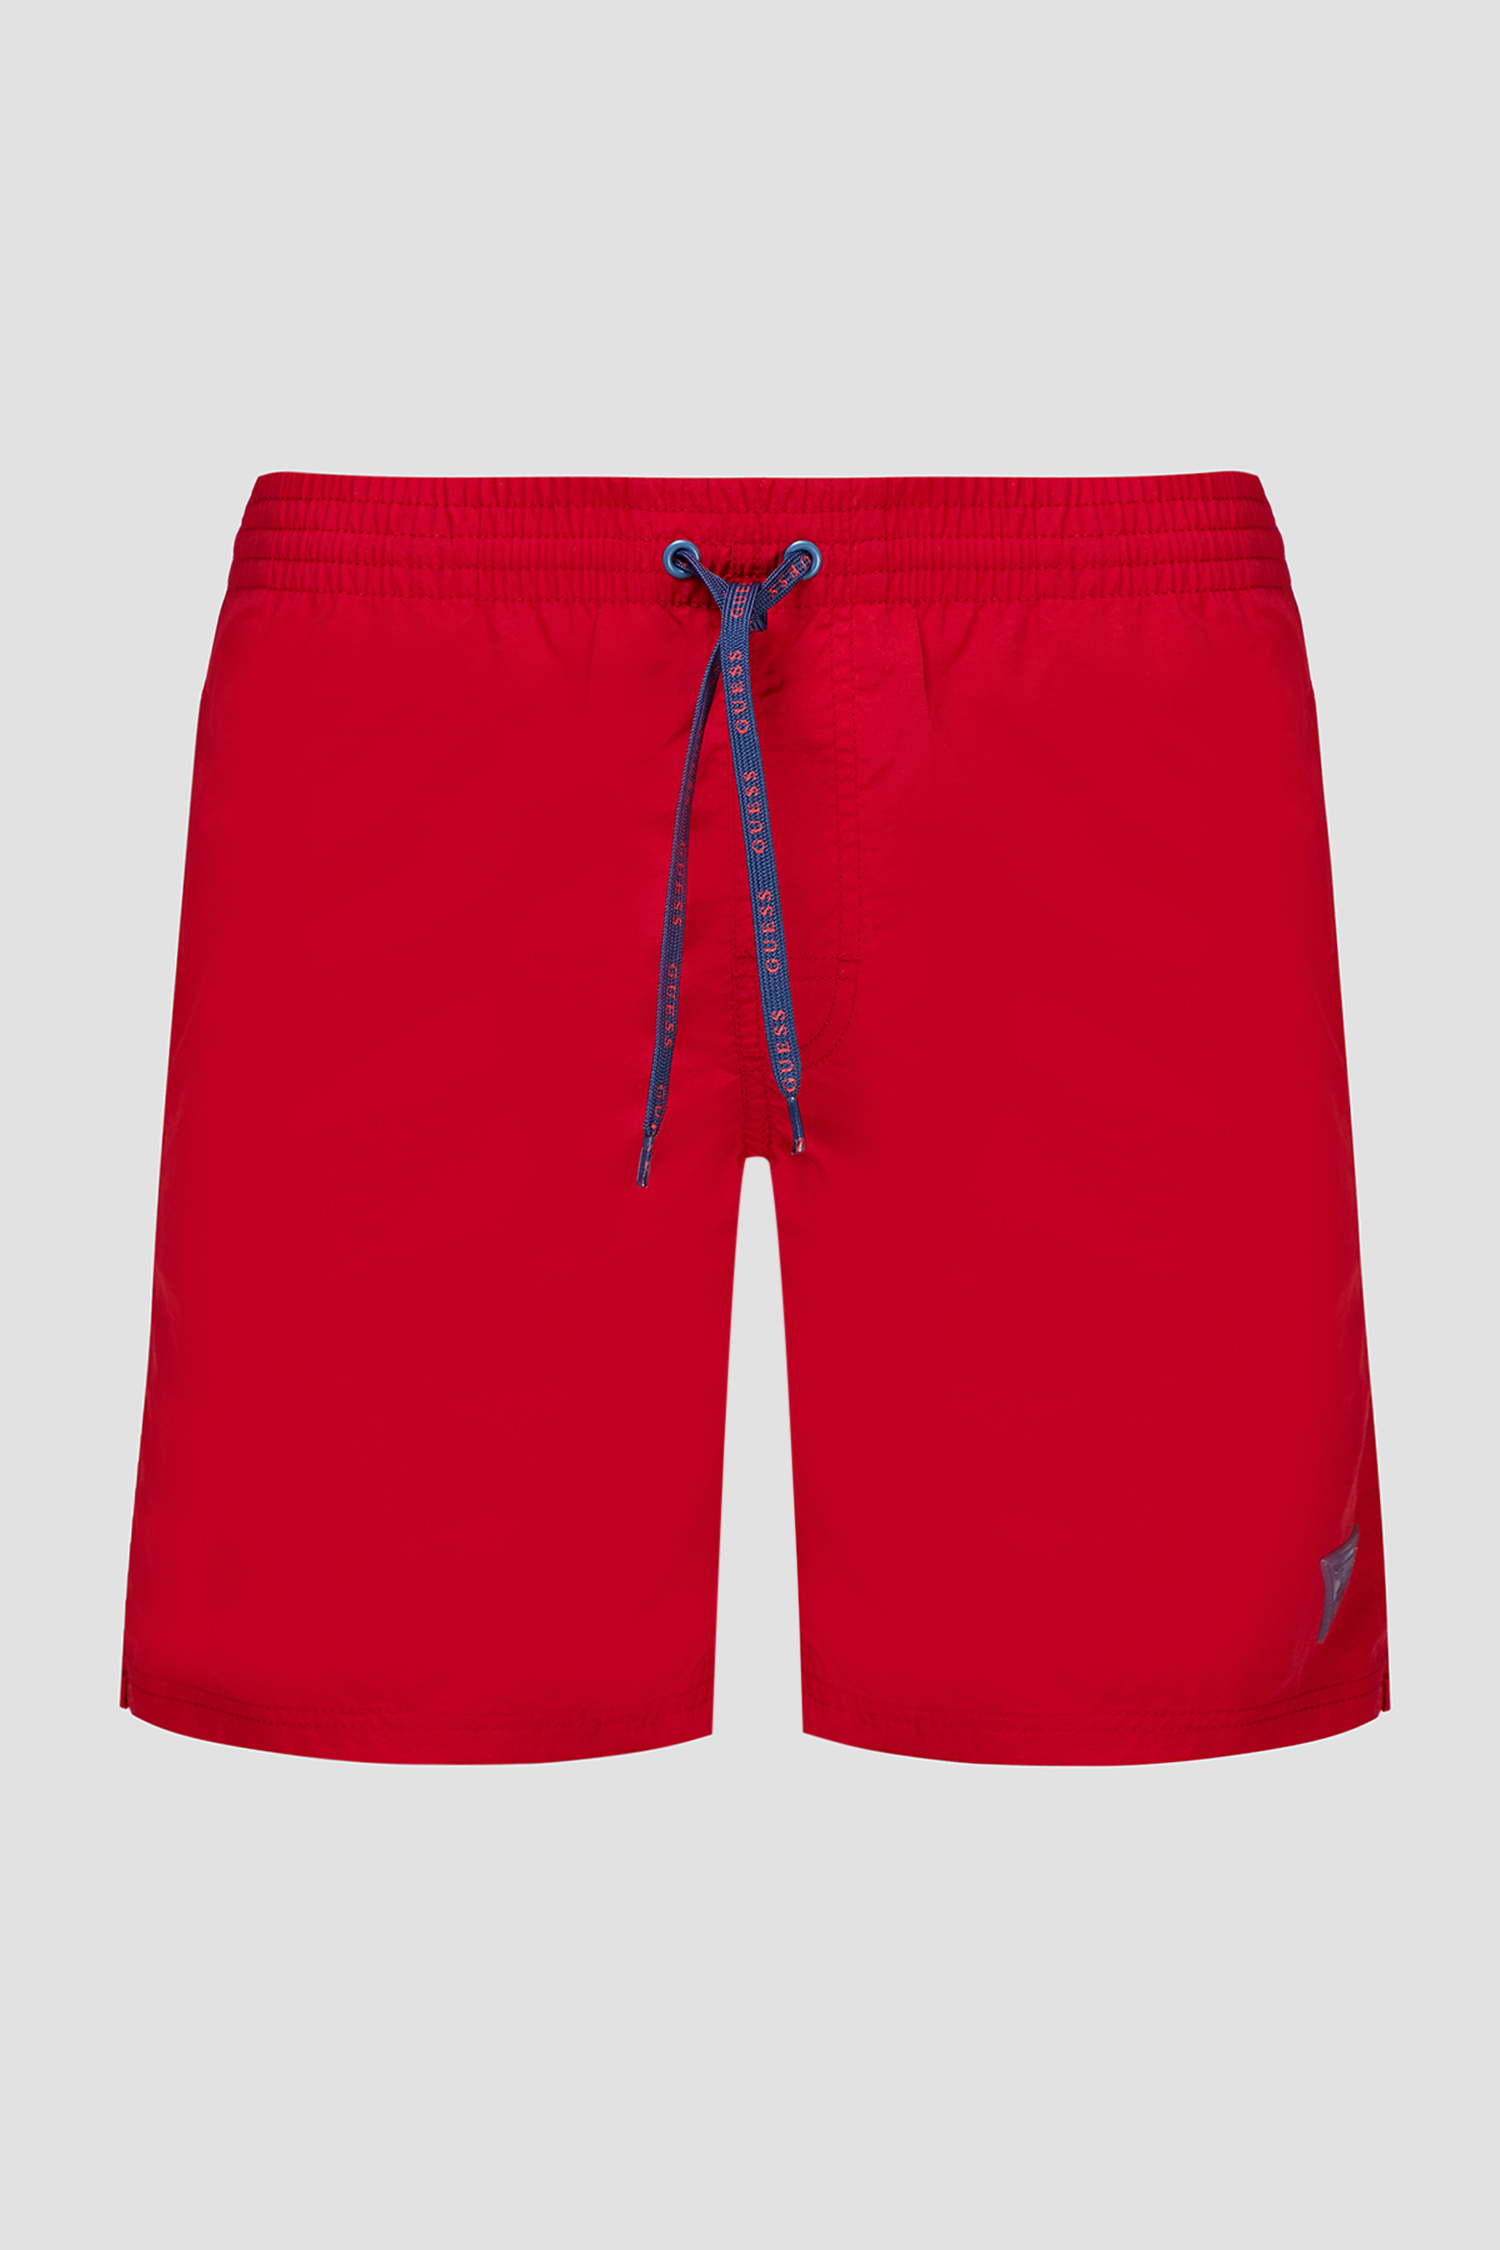 Чоловічі червоні плавальні шорти Guess F02T01.TEL27;TLRD